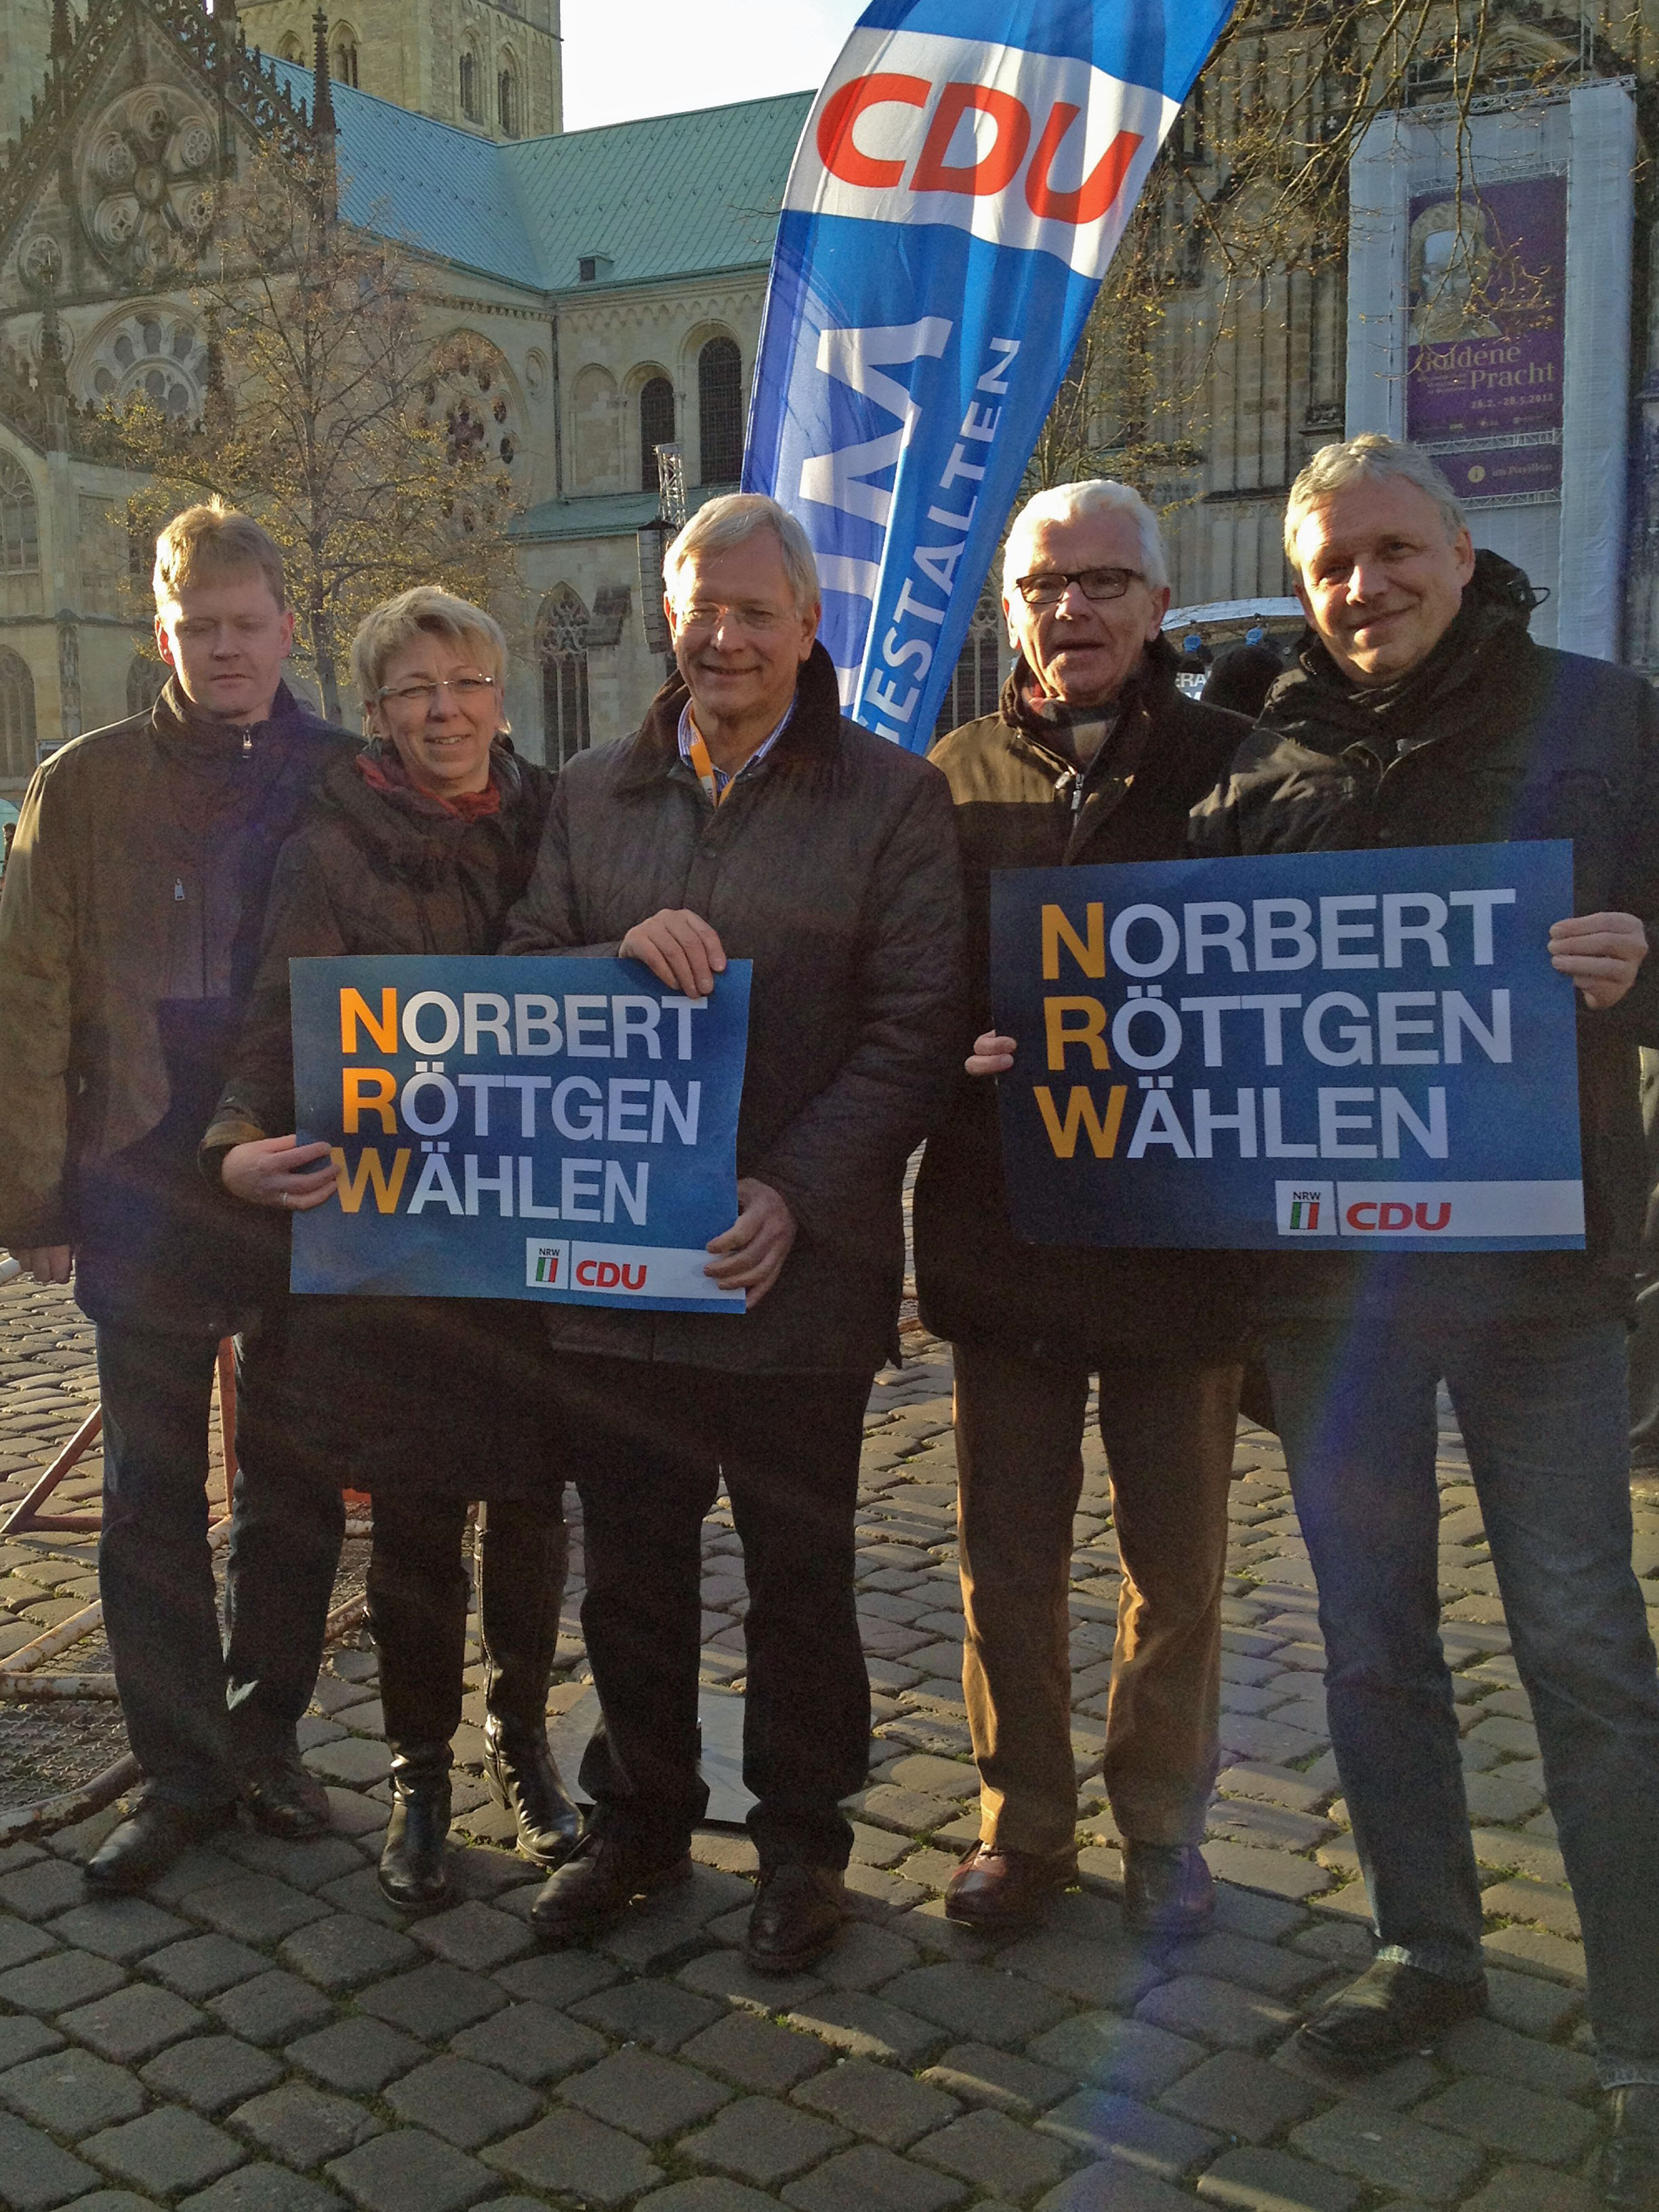 Unser Bild zeigt die Enser CDU-Vertreter mit Eckhard Uhlenberg in Münster. Andreas Brasse, Silvia Klein, Eckhard Uhlenberg, Friedhelm Wüllner, Ulrich Häken.